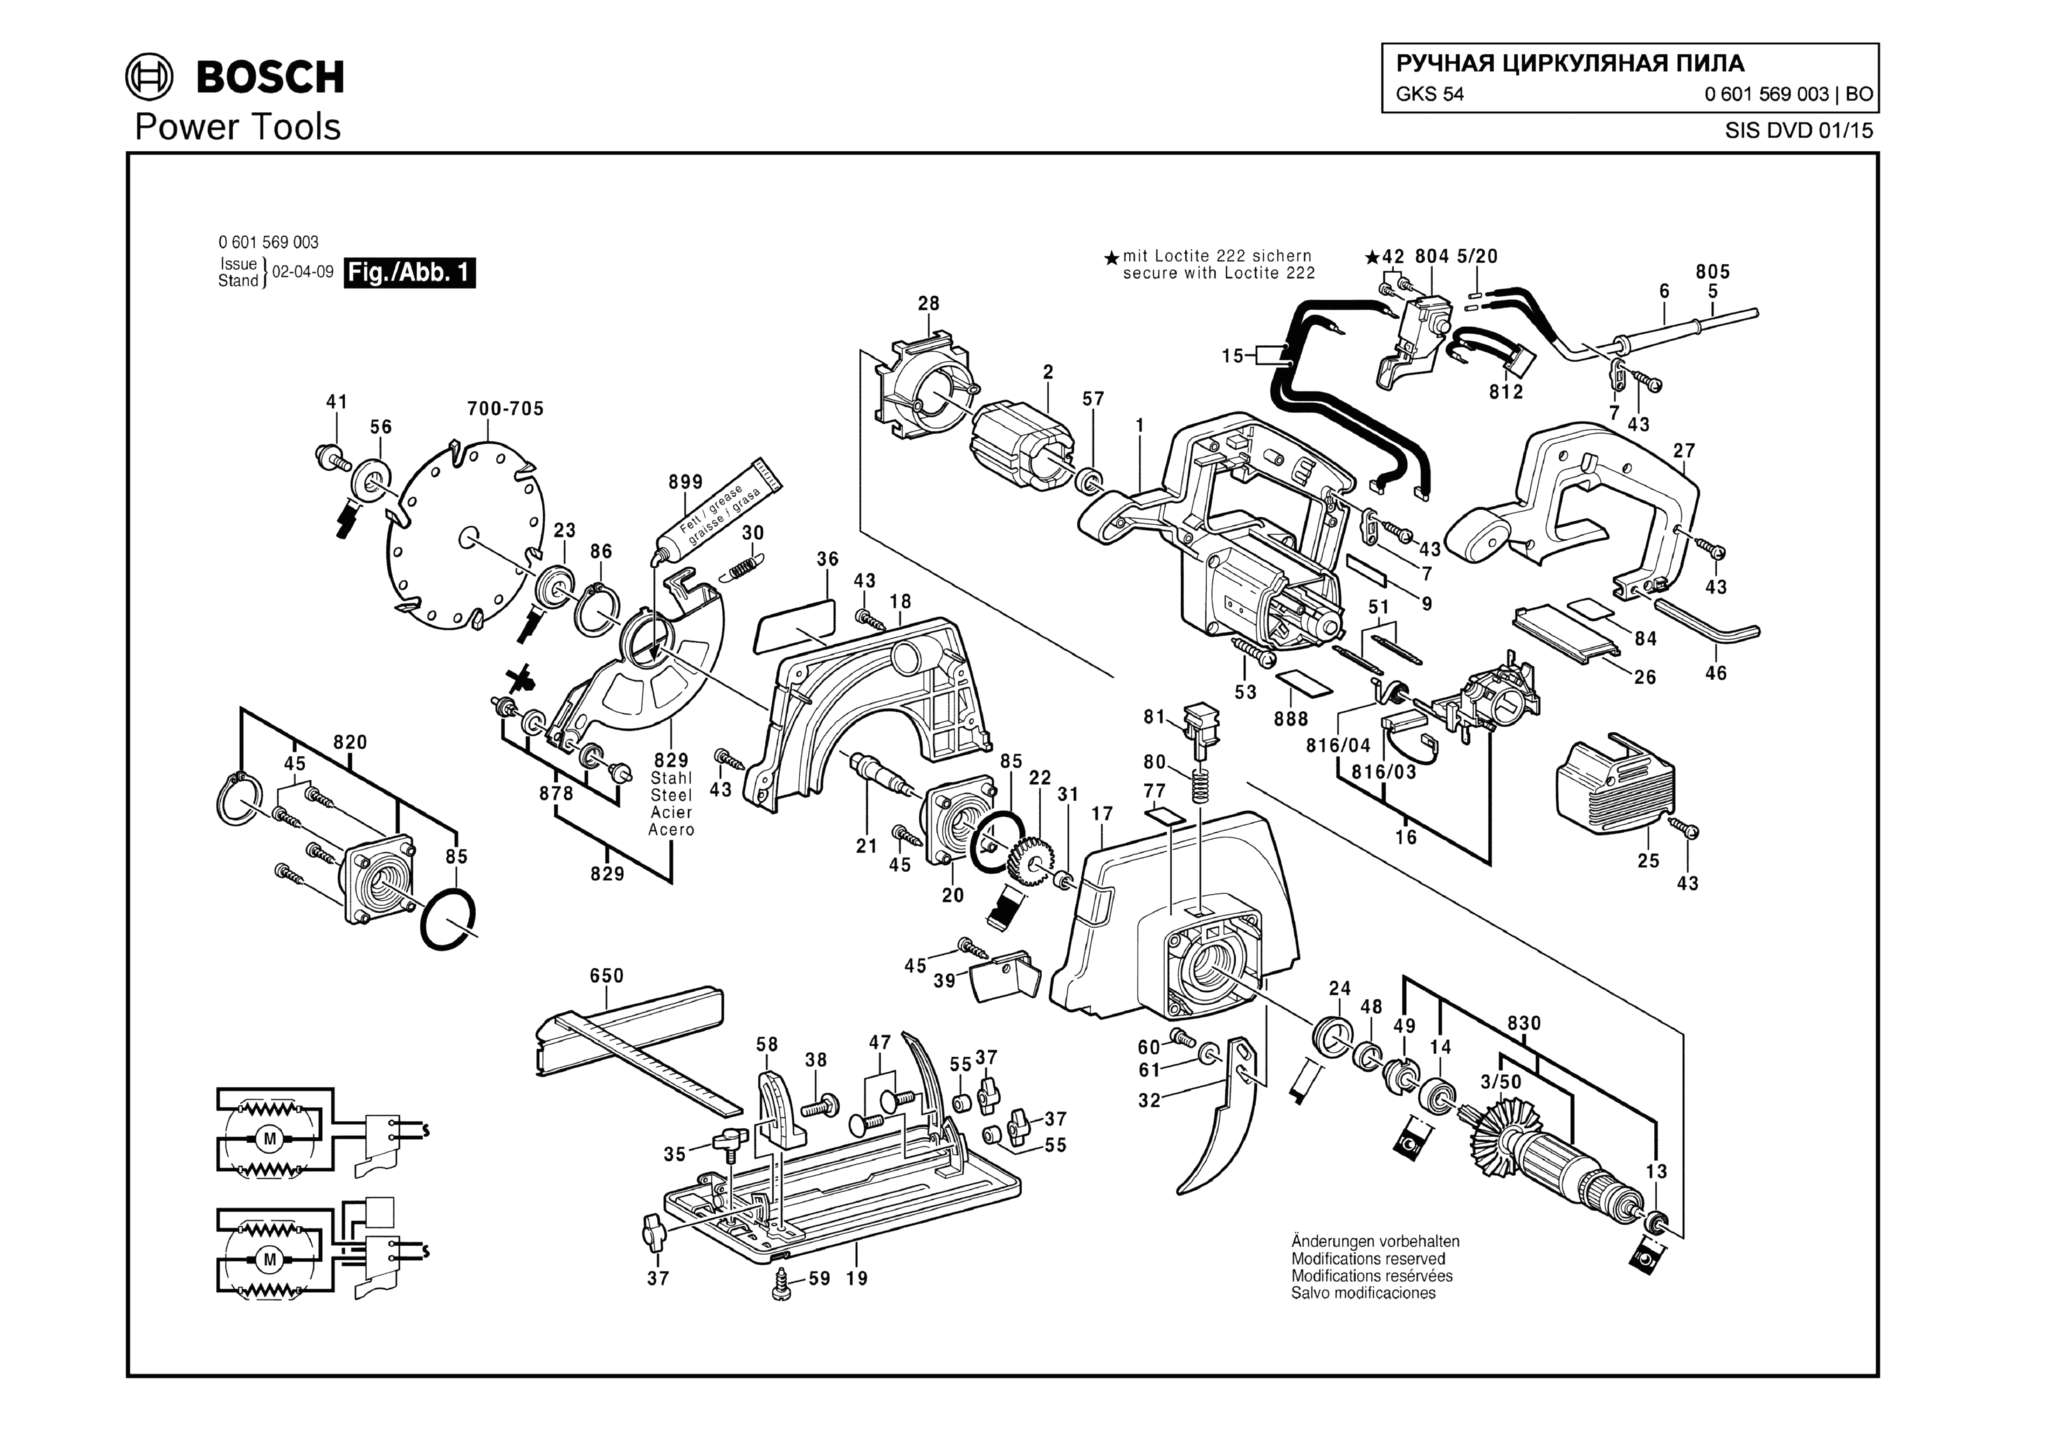 Запчасти, схема и деталировка Bosch GKS 54 (ТИП 0601569003)